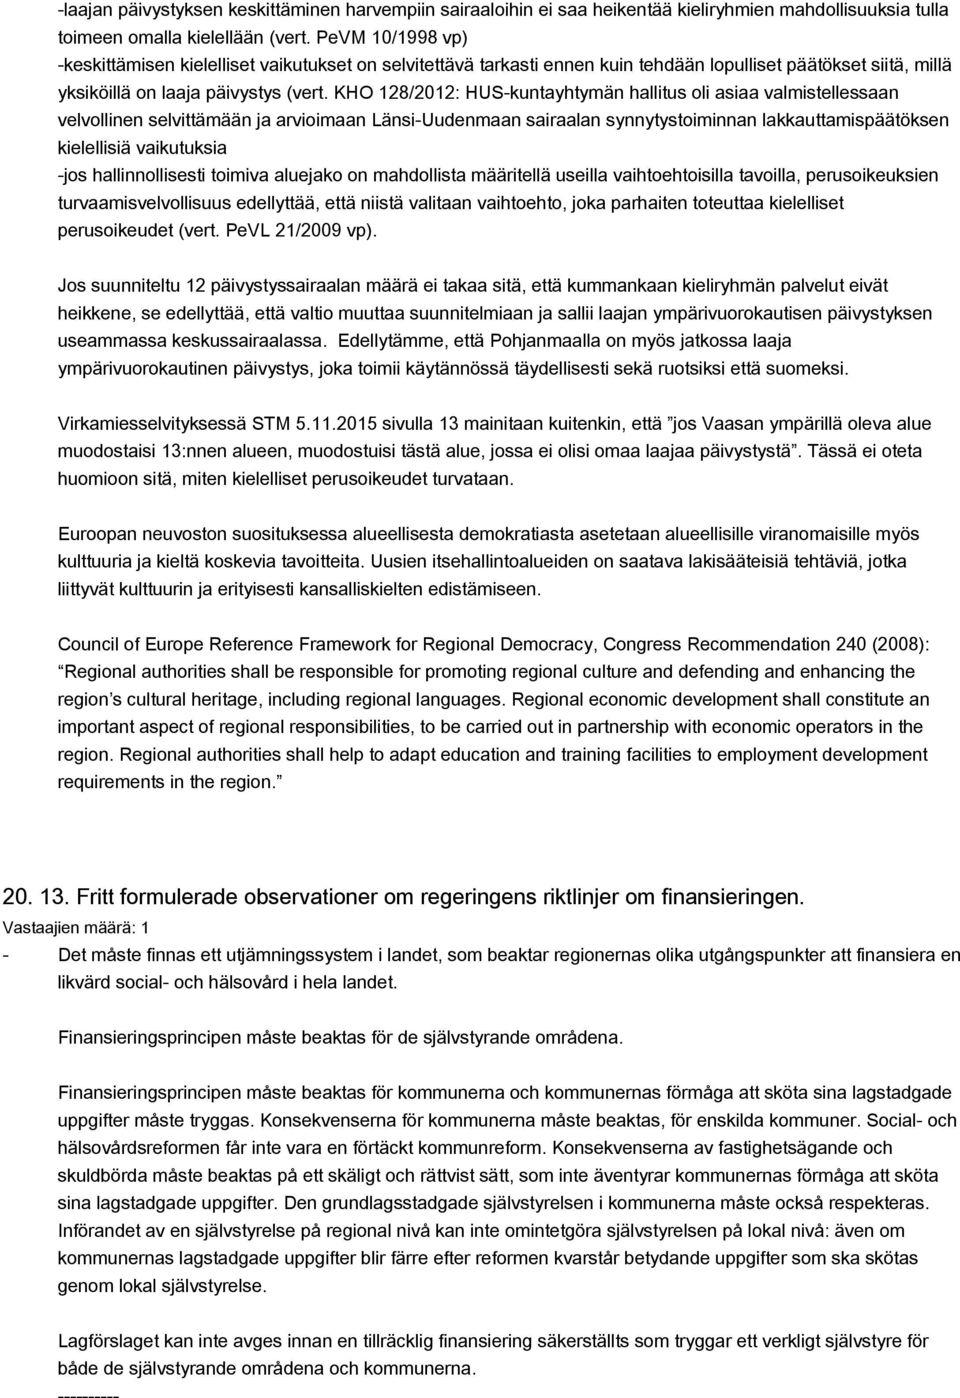 KHO 128/2012: HUS-kuntayhtymän hallitus oli asiaa valmistellessaan velvollinen selvittämään ja arvioimaan Länsi-Uudenmaan sairaalan synnytystoiminnan lakkauttamispäätöksen kielellisiä vaikutuksia